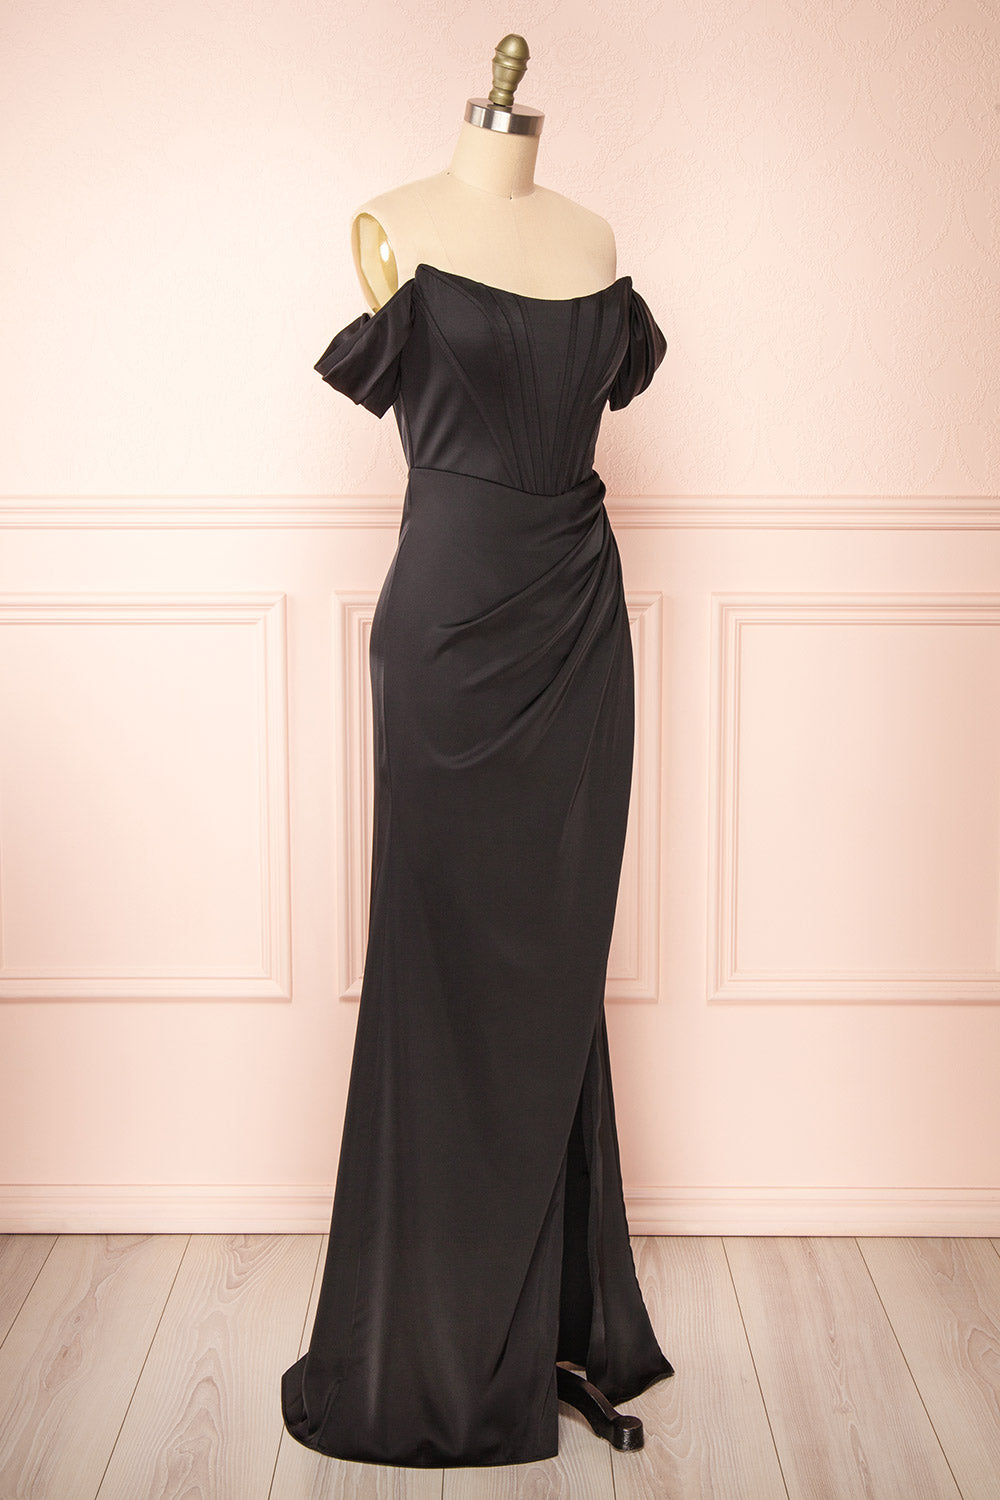 Namie Black Corset Maxi Dress w/ Removable Straps | Boutique 1861 side view 